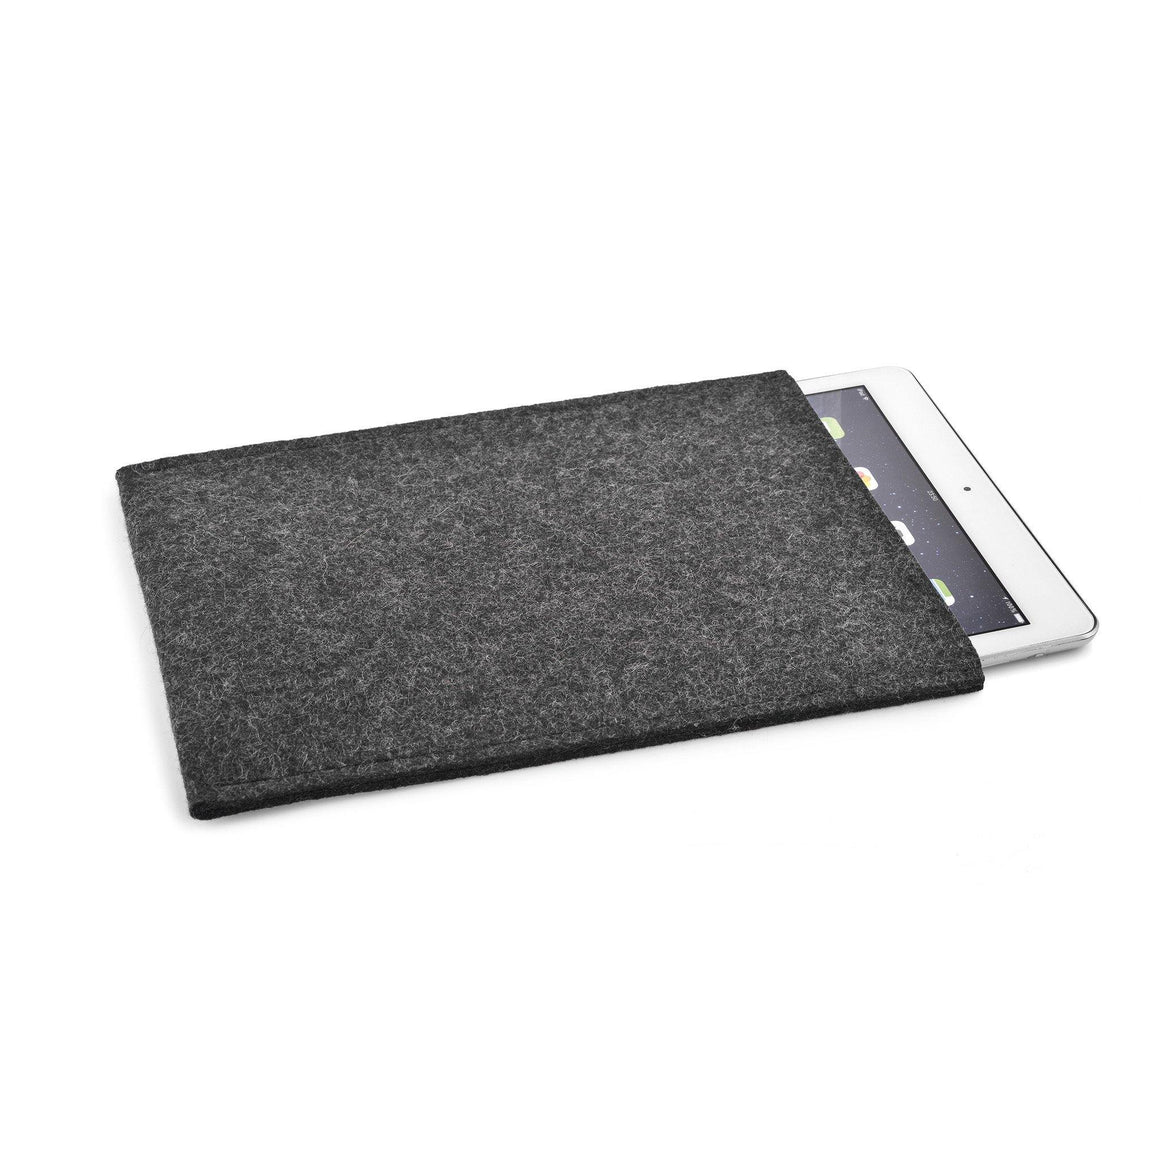 iPad Wool Felt Cover Charcoal Portrait - Wrappers UK